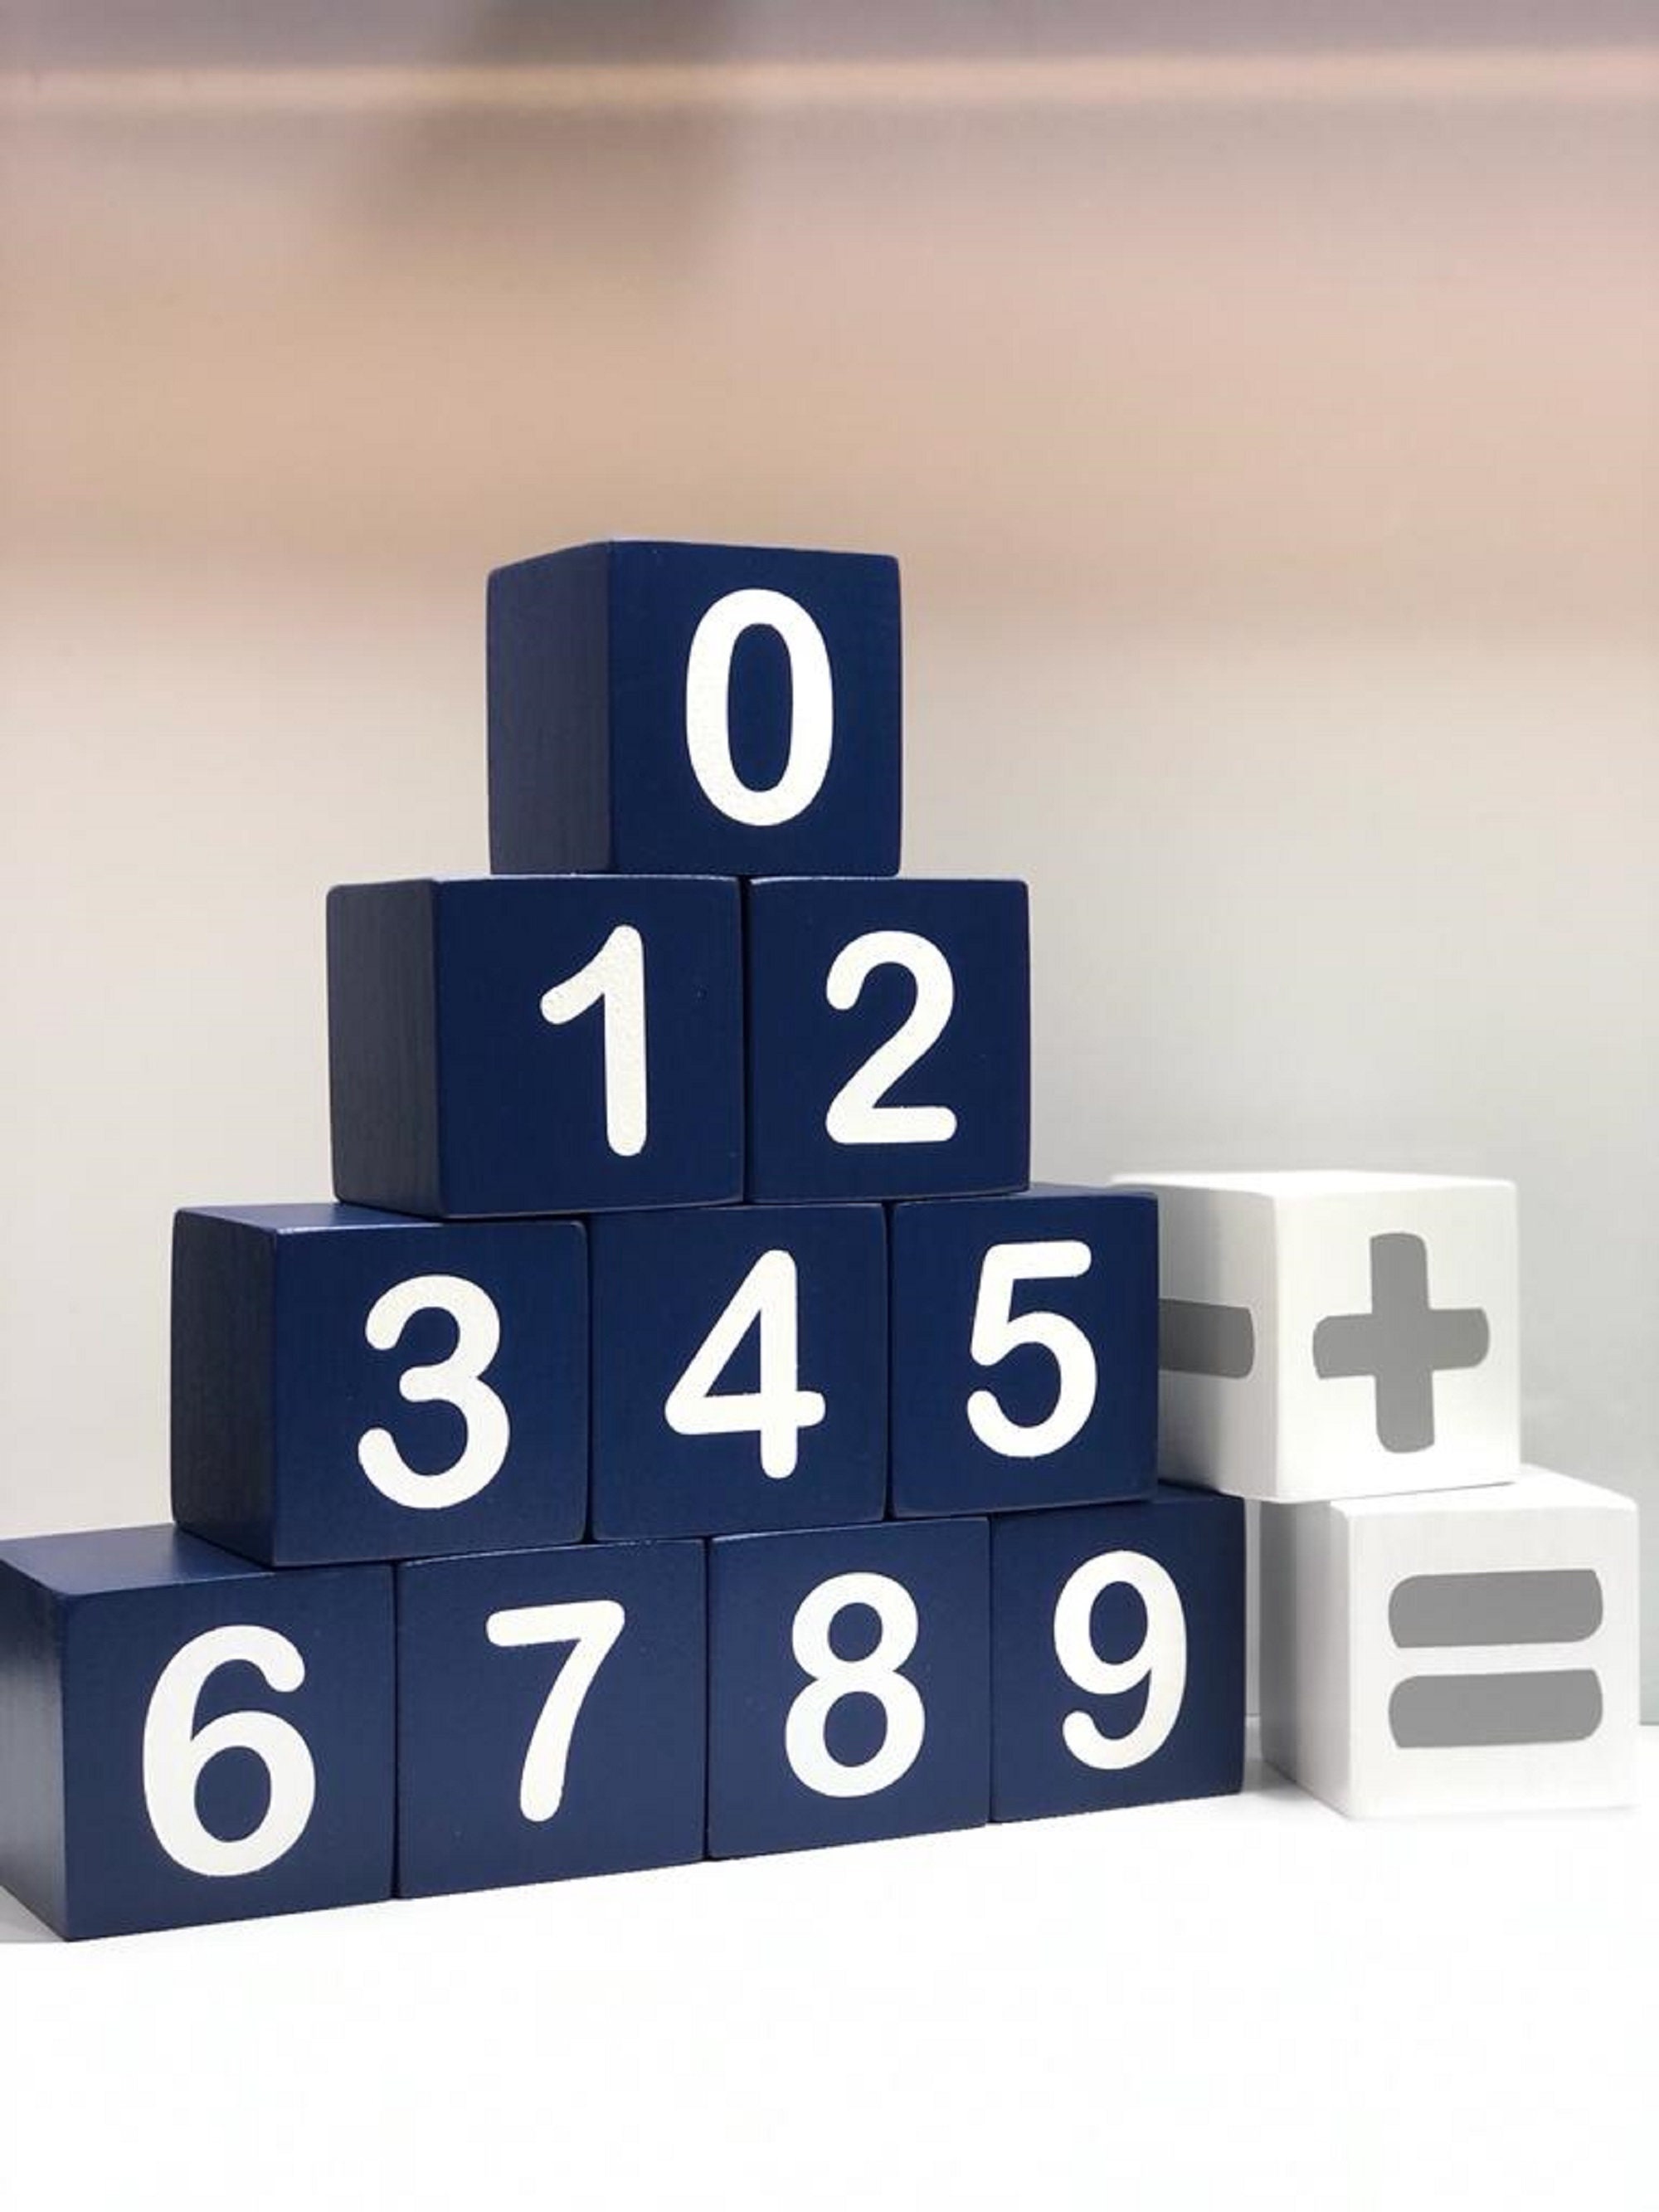 Cubos de madera, 100 bloques cuadrados de madera cúbica sin terminar para  contar matemáticas, manualidades, juego infantil, 0.6 in